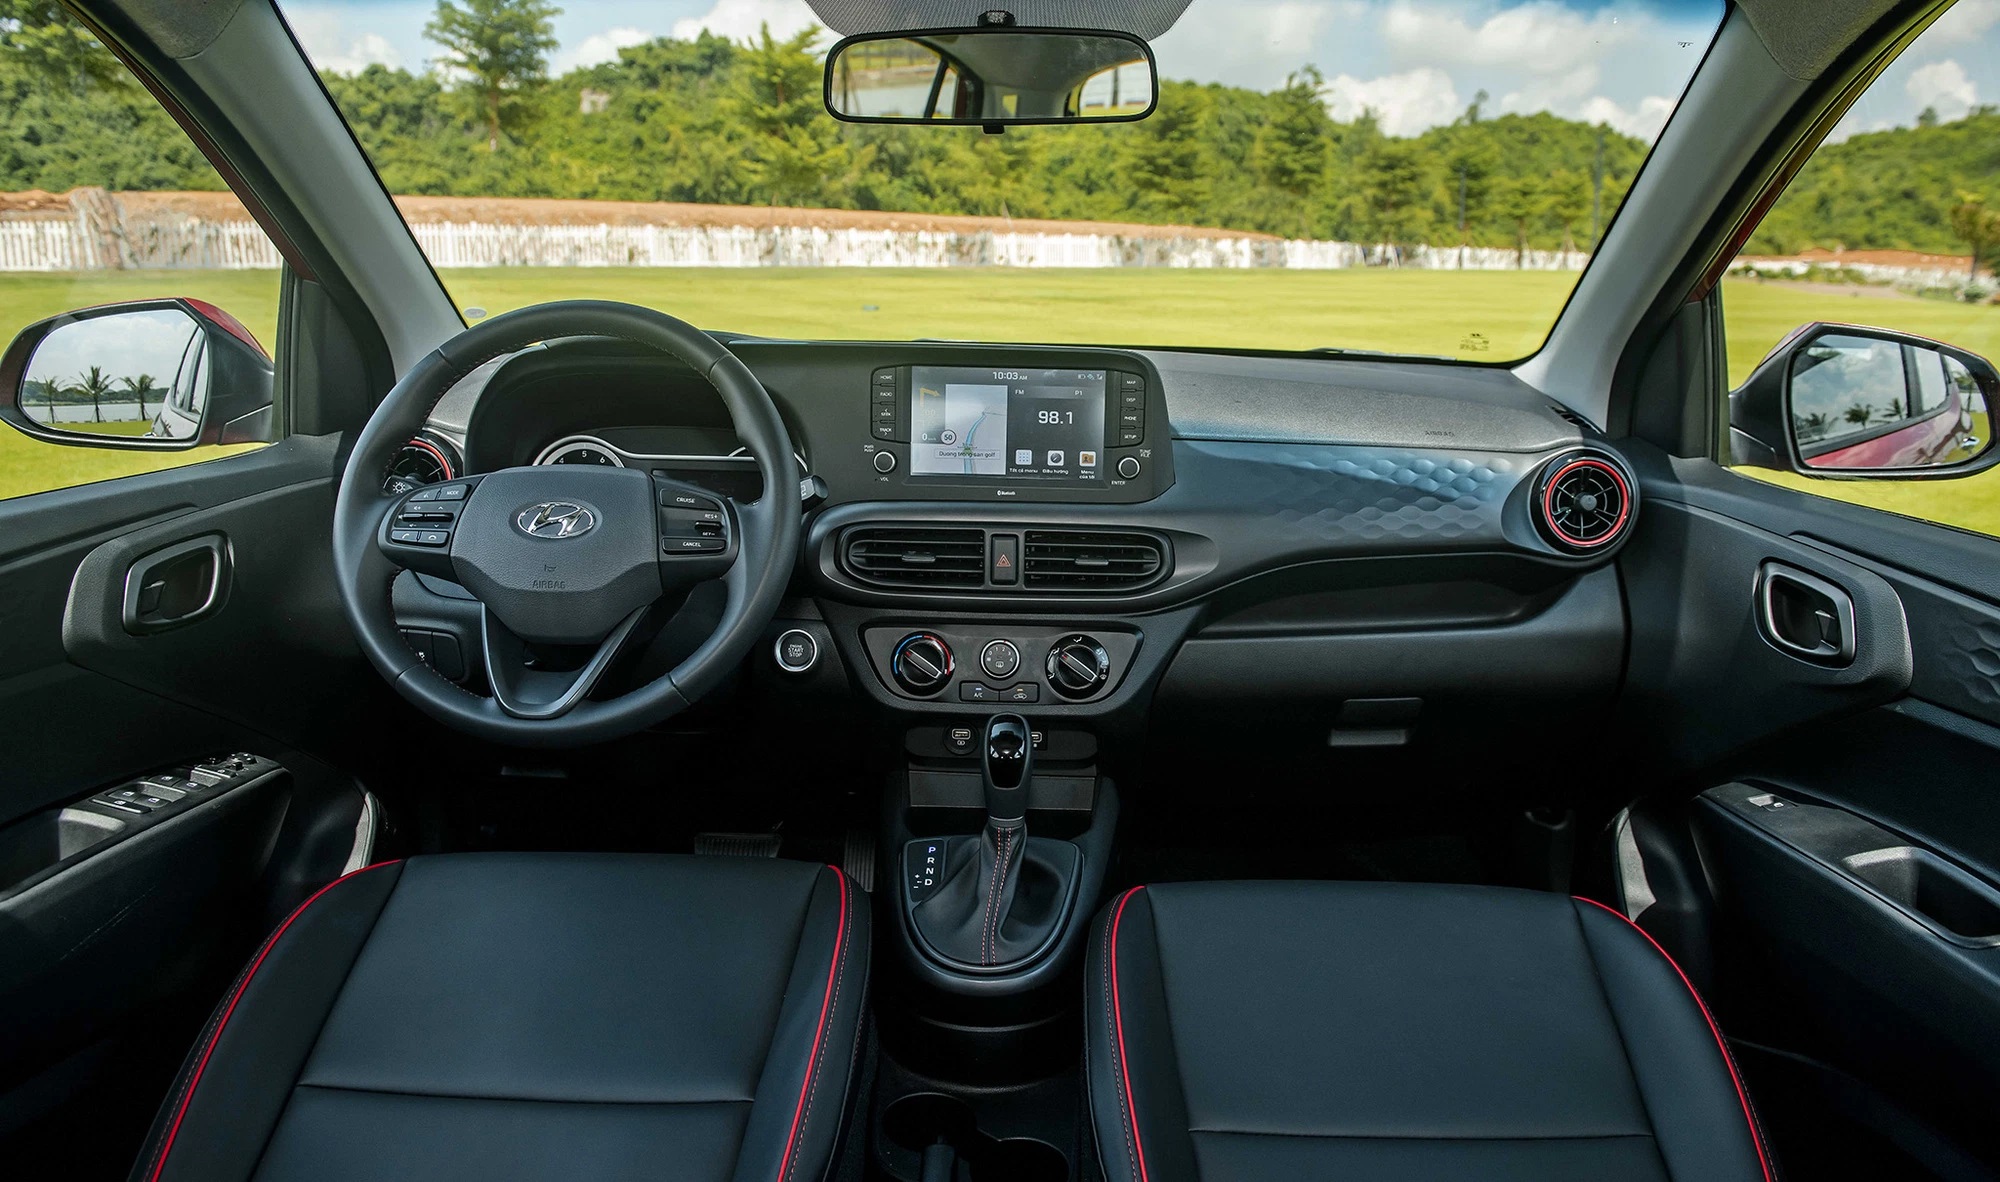 Không kém cạnh VinFast Fadil, mẫu Hyundai Grand i10 tung ưu đãi khủng, giá xe chỉ còn 330 triệu đồng